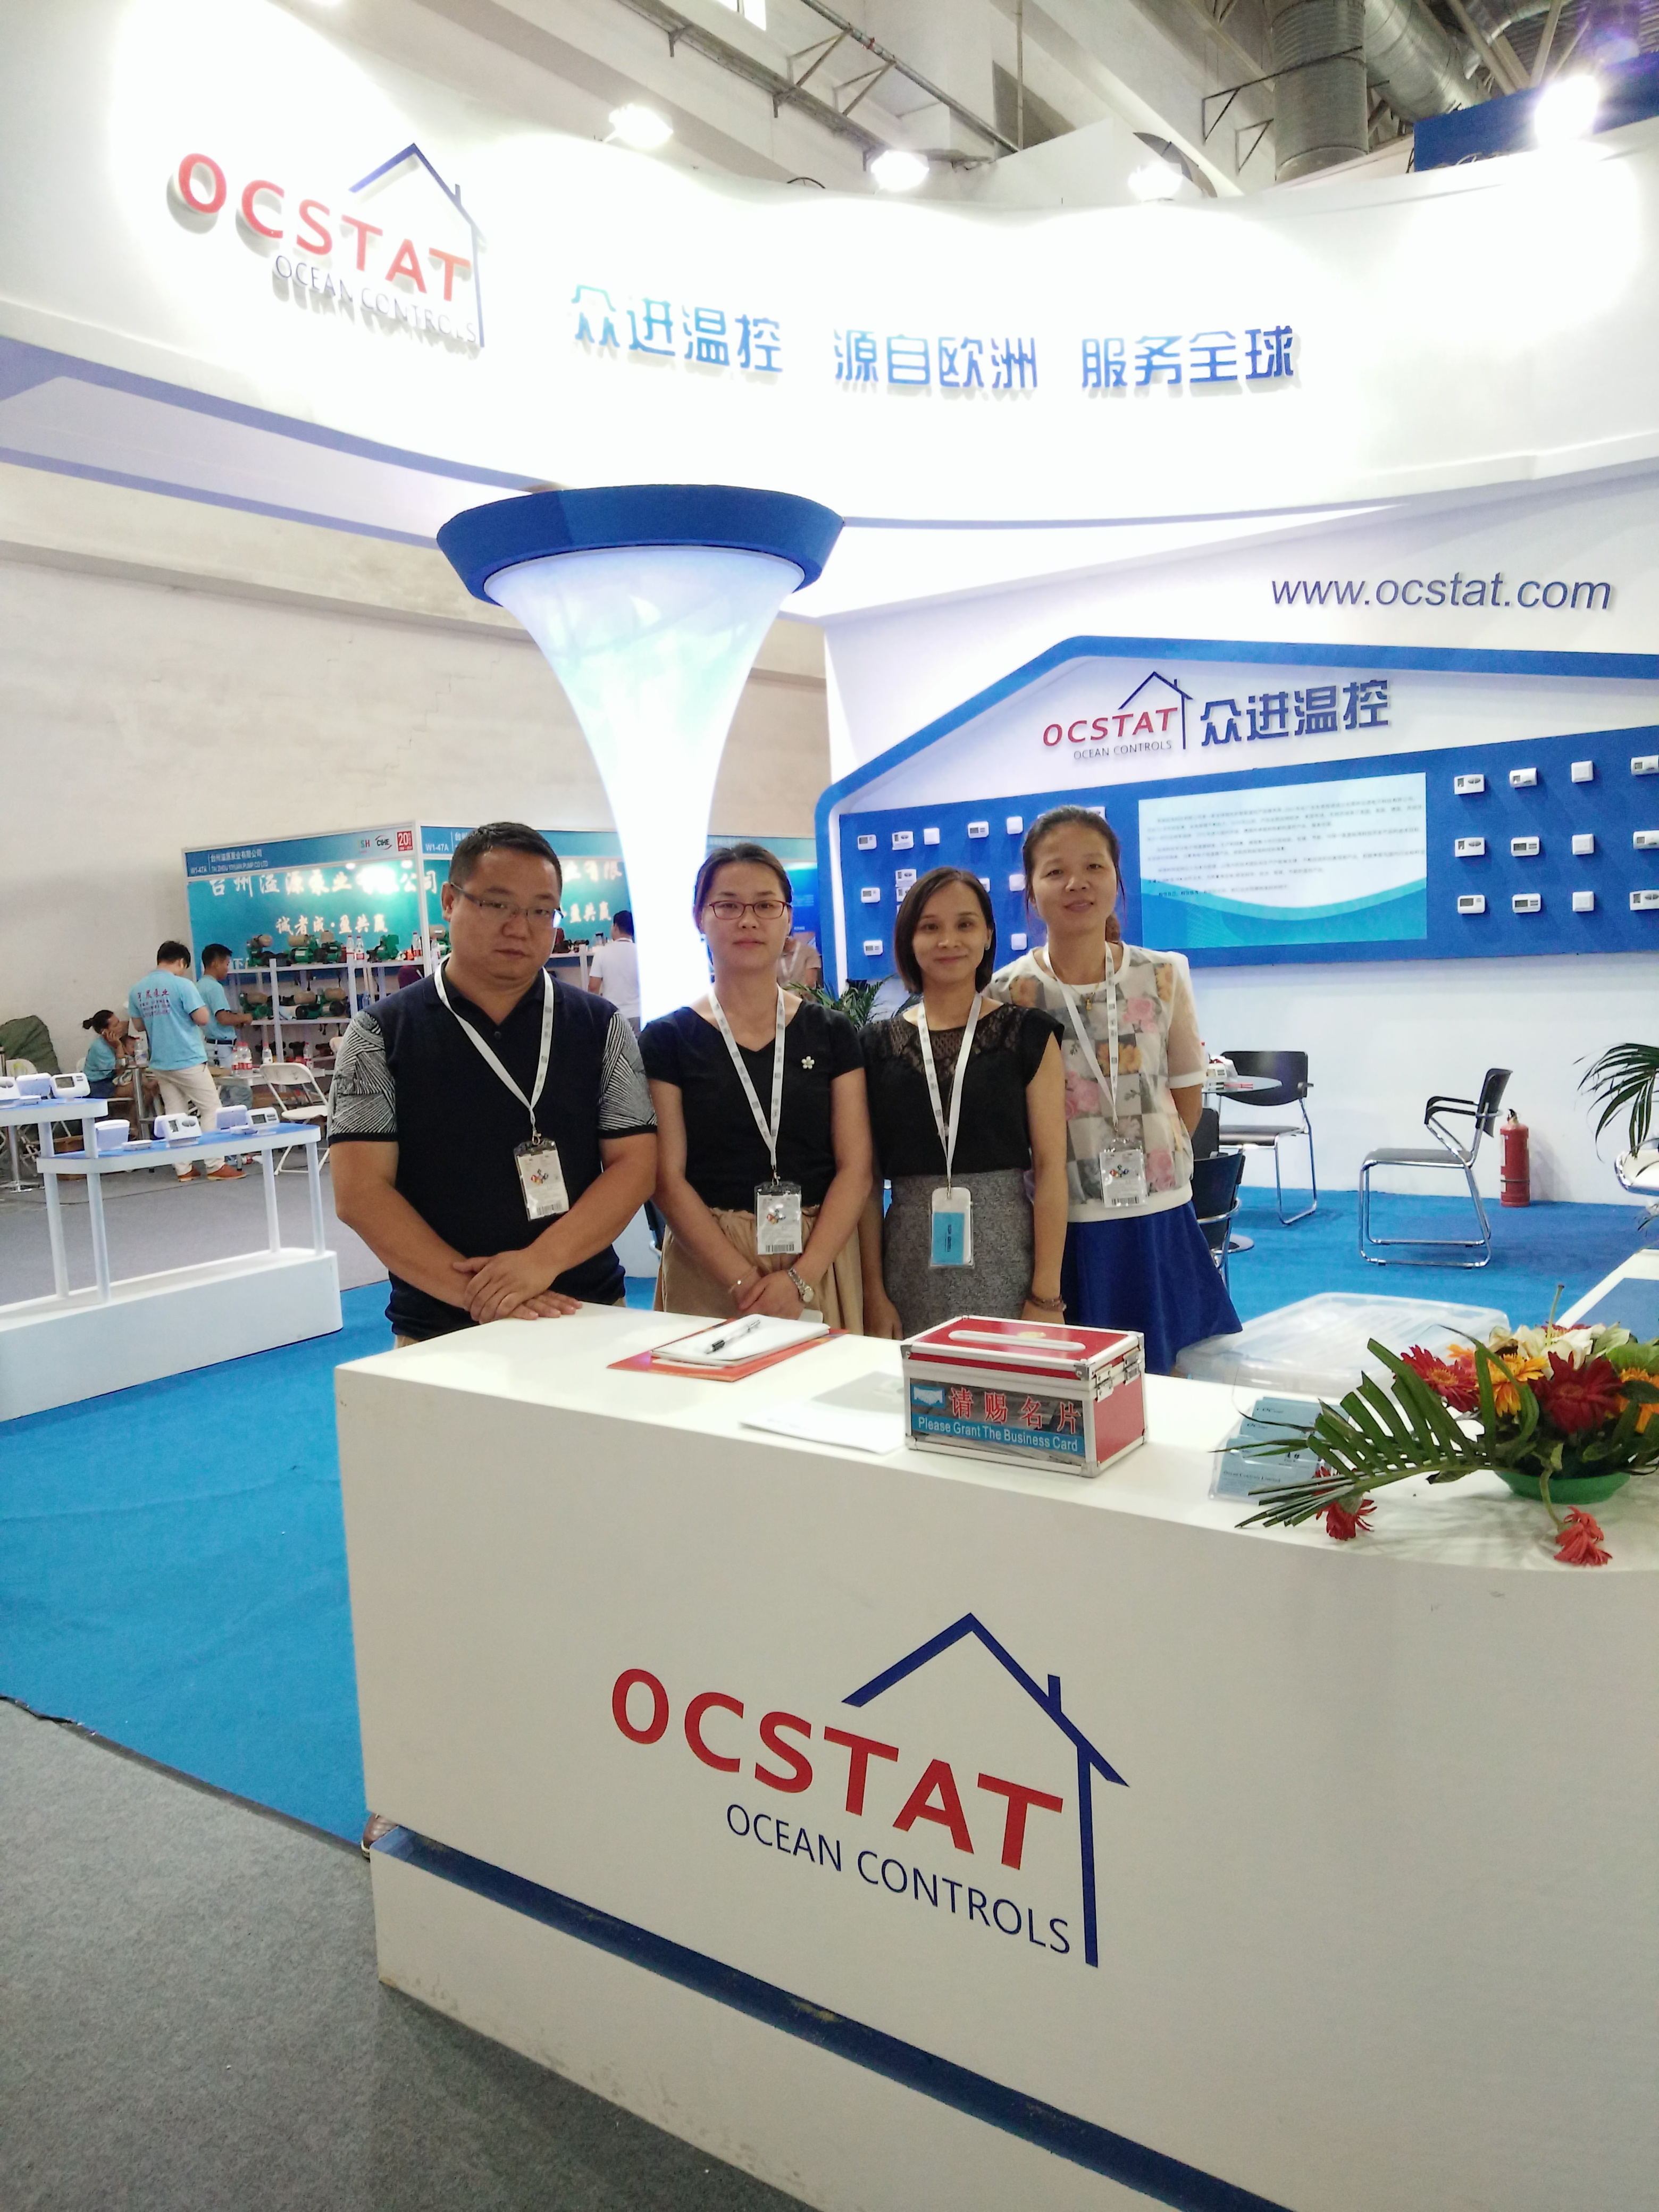 ประเทศจีน Ocean Controls Limited รายละเอียด บริษัท